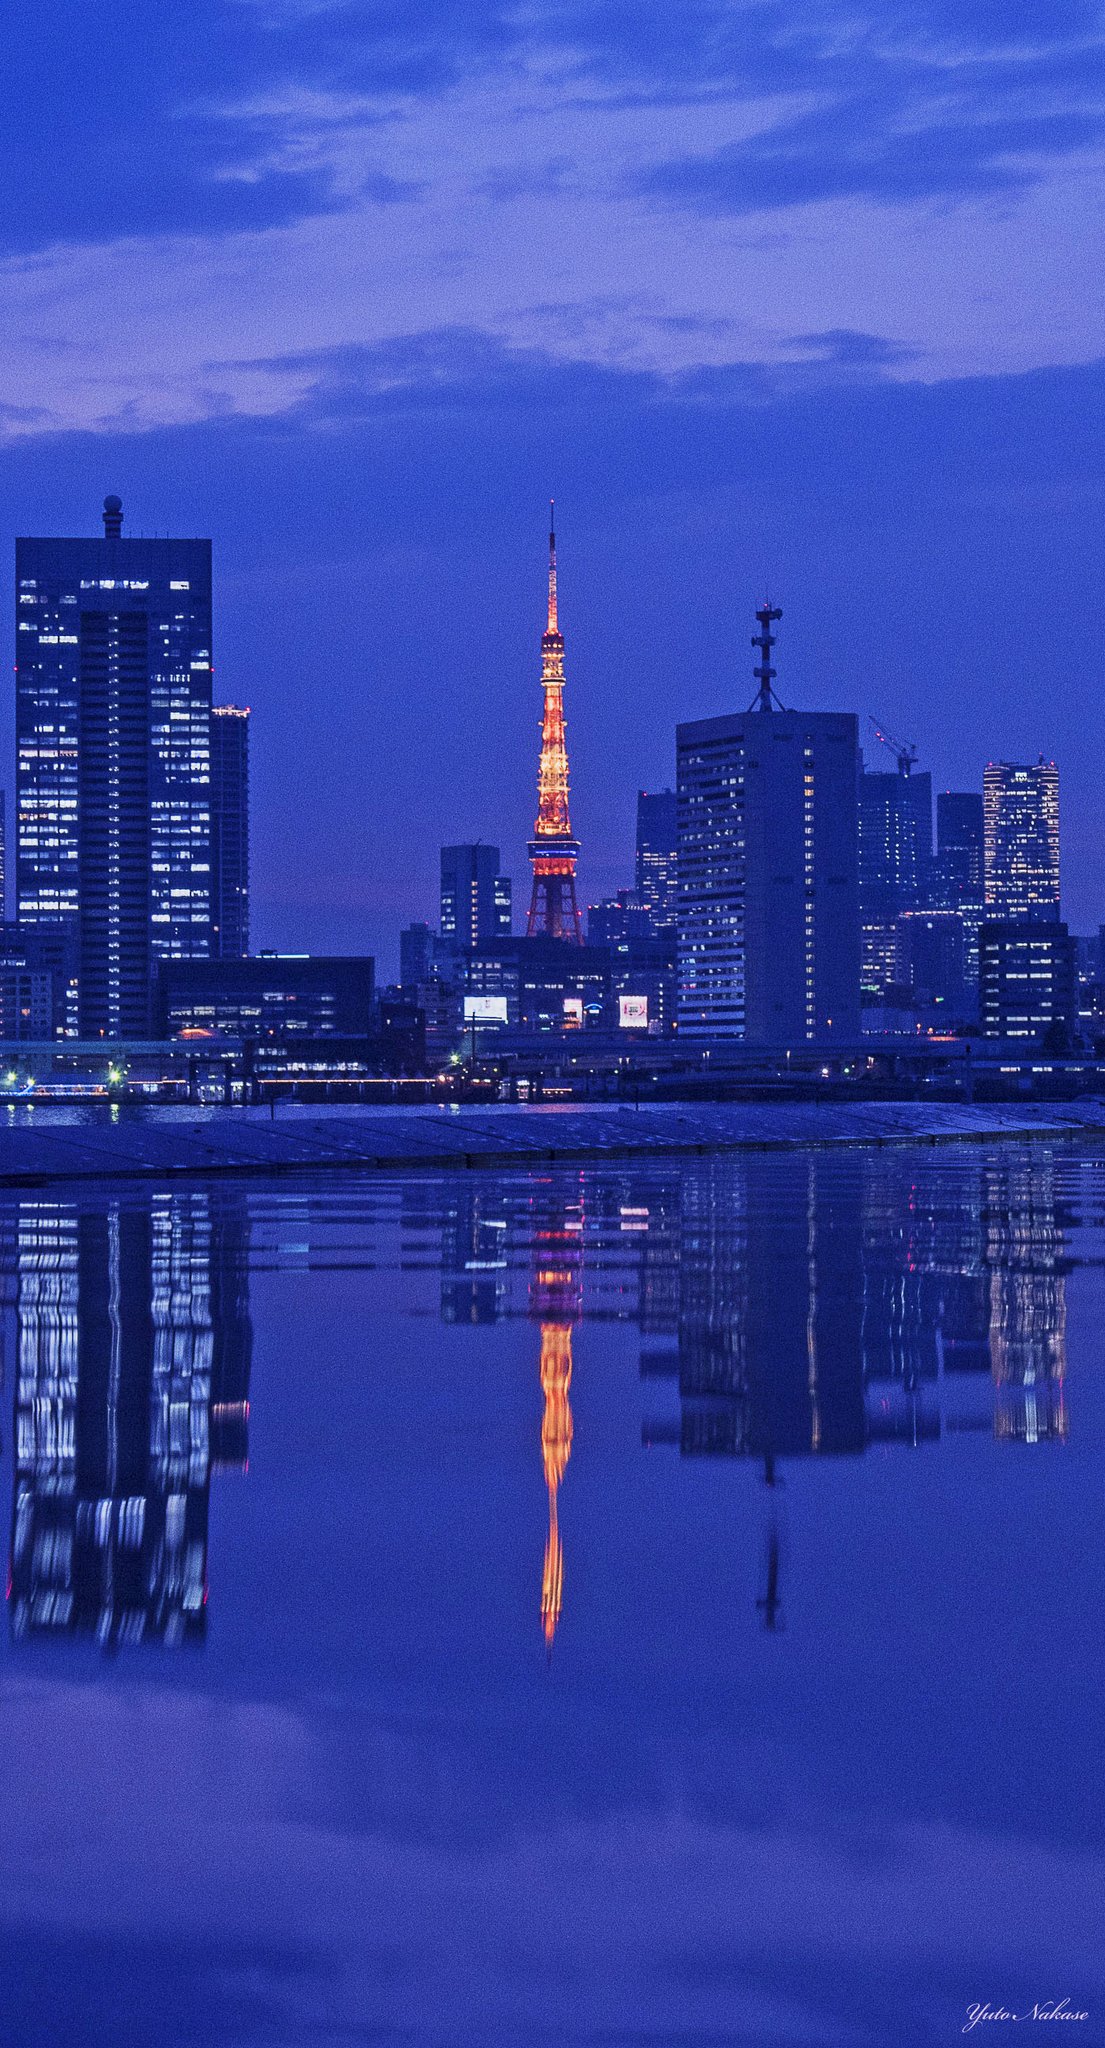 中瀬雄登 Yuto Nakase 写真家 東京タワー大好きです 六本木ヒルズからと晴海ふ頭からの夜景です スマホの 壁紙として使用できるサイズです Iphone壁紙 ニッポンを撮る 東京タワー 六本木ヒルズ 晴海ふ頭 夜景 T Co